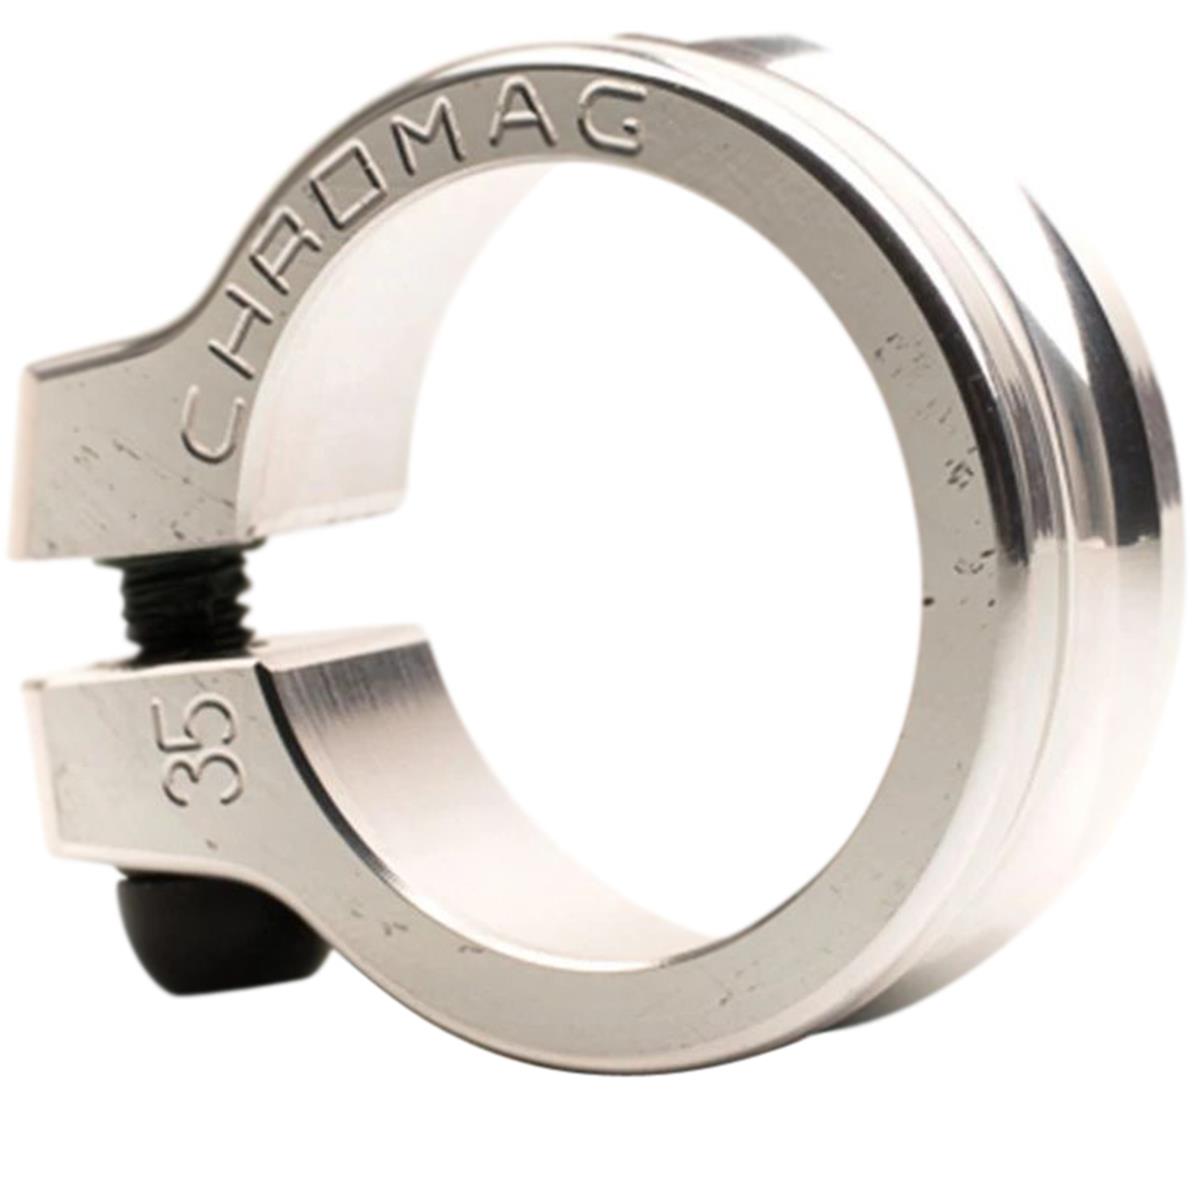 Chromag Sattelklemme NQR 36.5 mm, Aluminium, Zinn